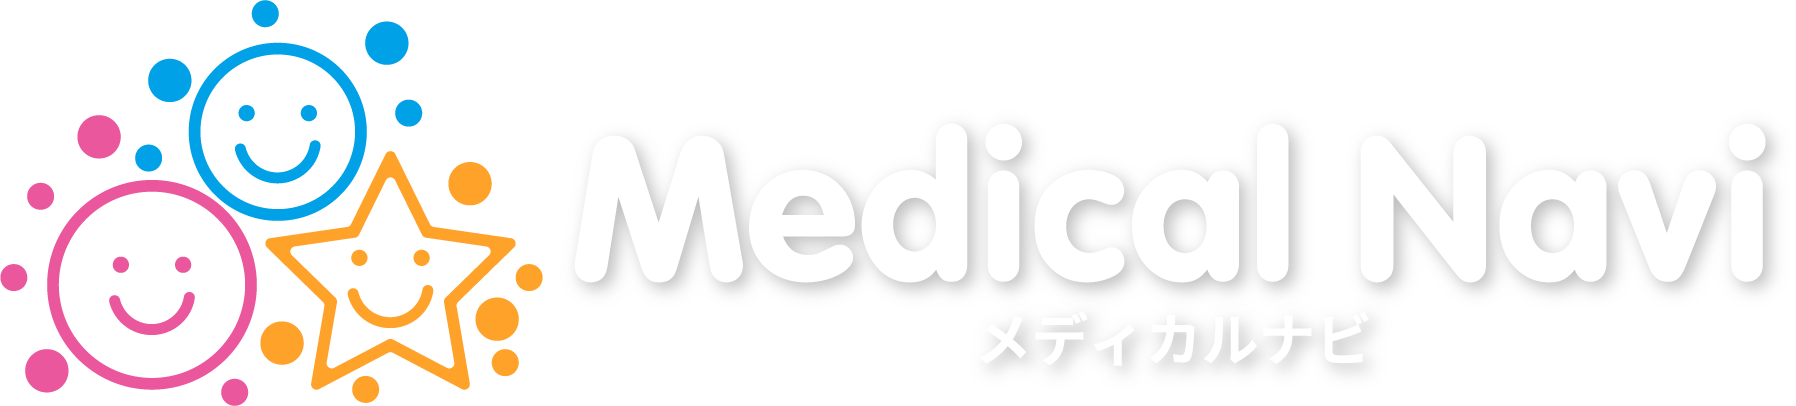 Medical navi -メディカルナビ-【関西の医療系専門人材の求人(大阪・京都・兵庫・奈良)】